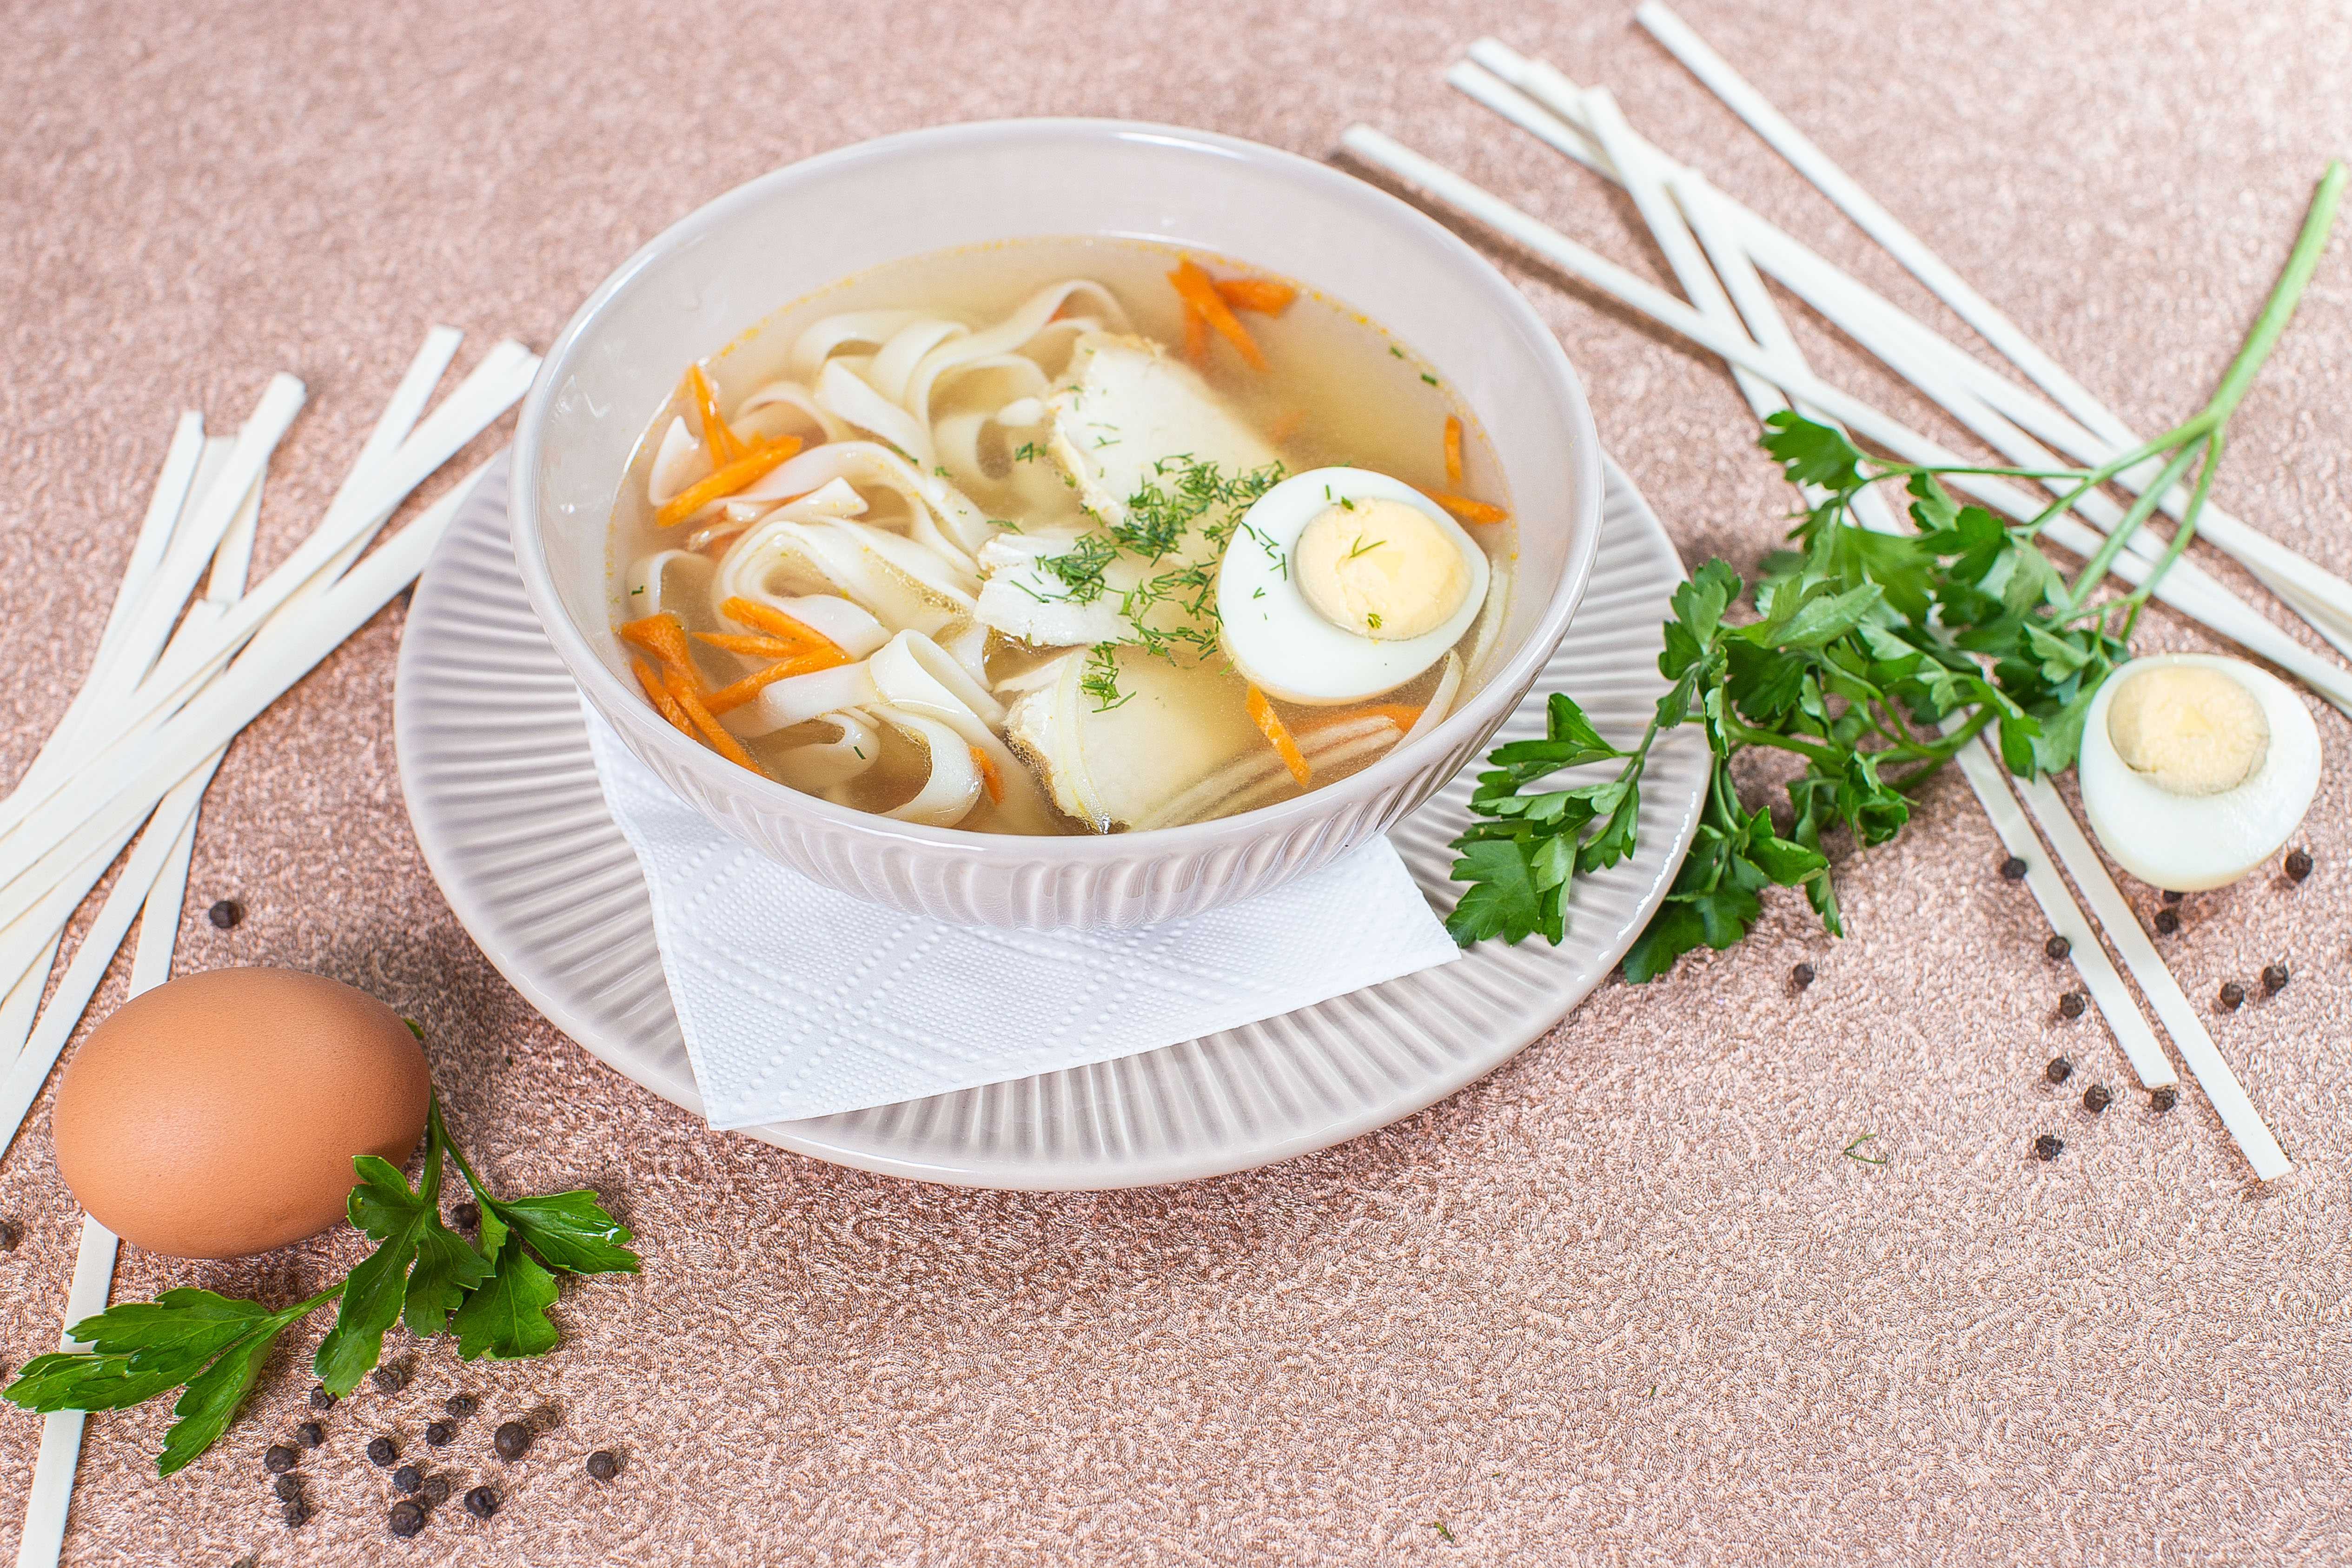 Куриный суп с вермишелью и картошкой - два лучших рецепта с пошаговыми фото